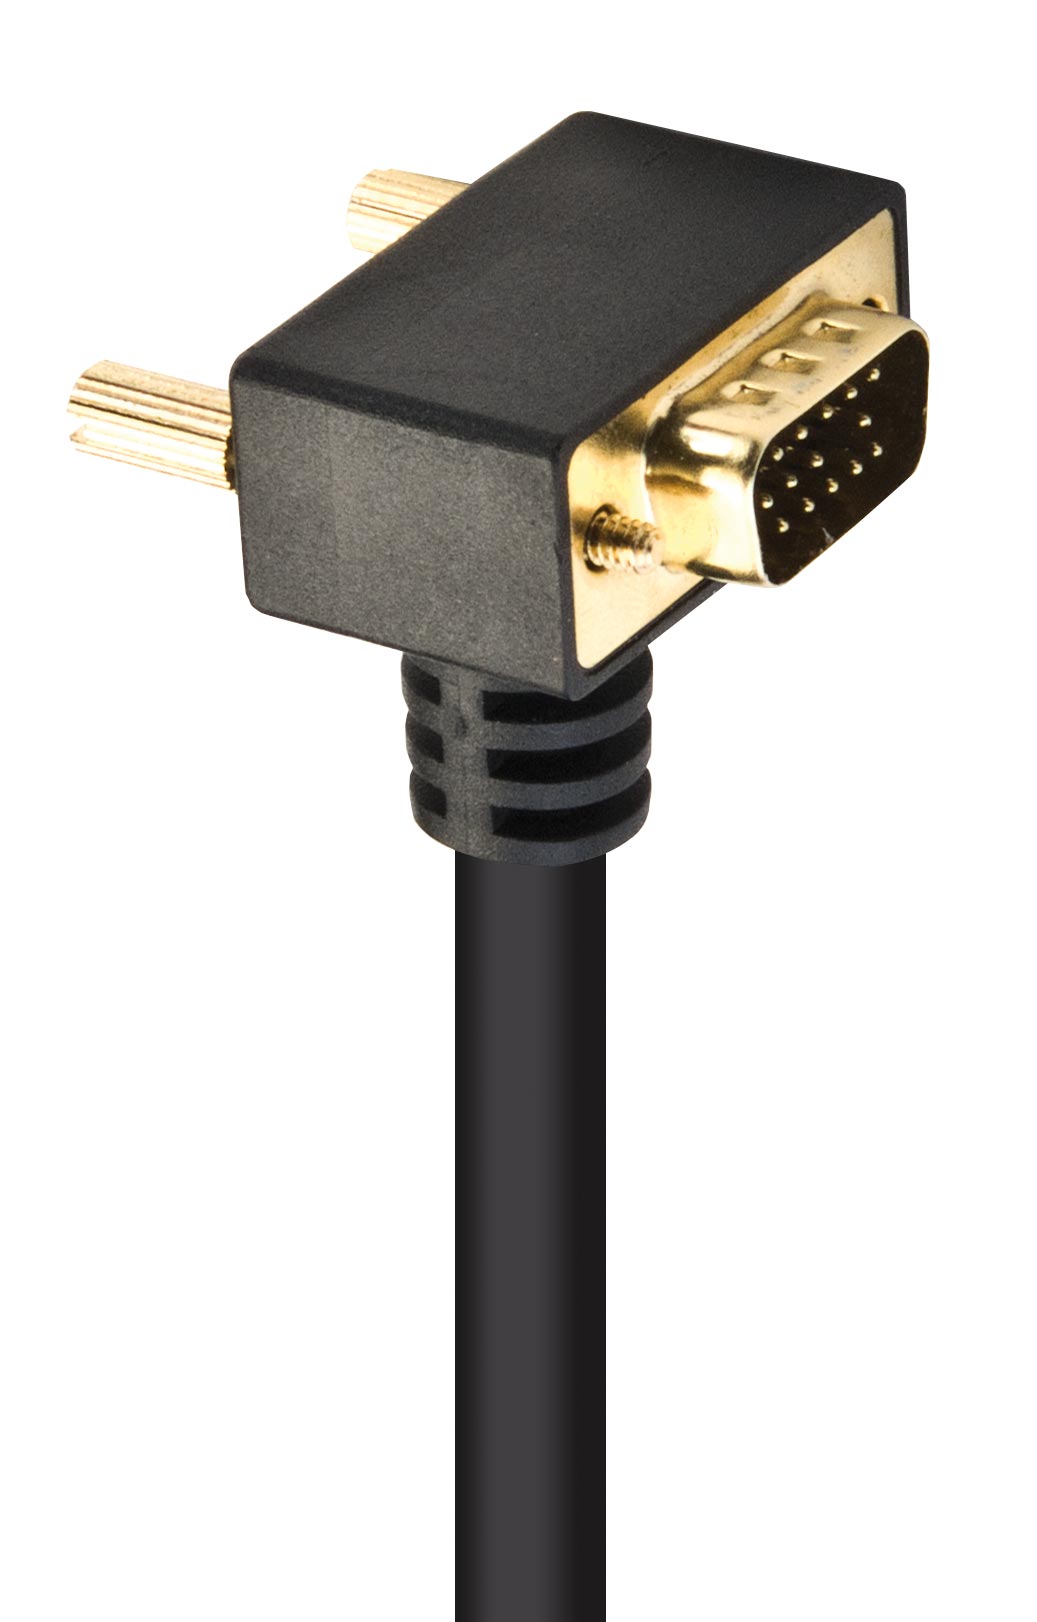 VGA cable with angled plug, 10 m